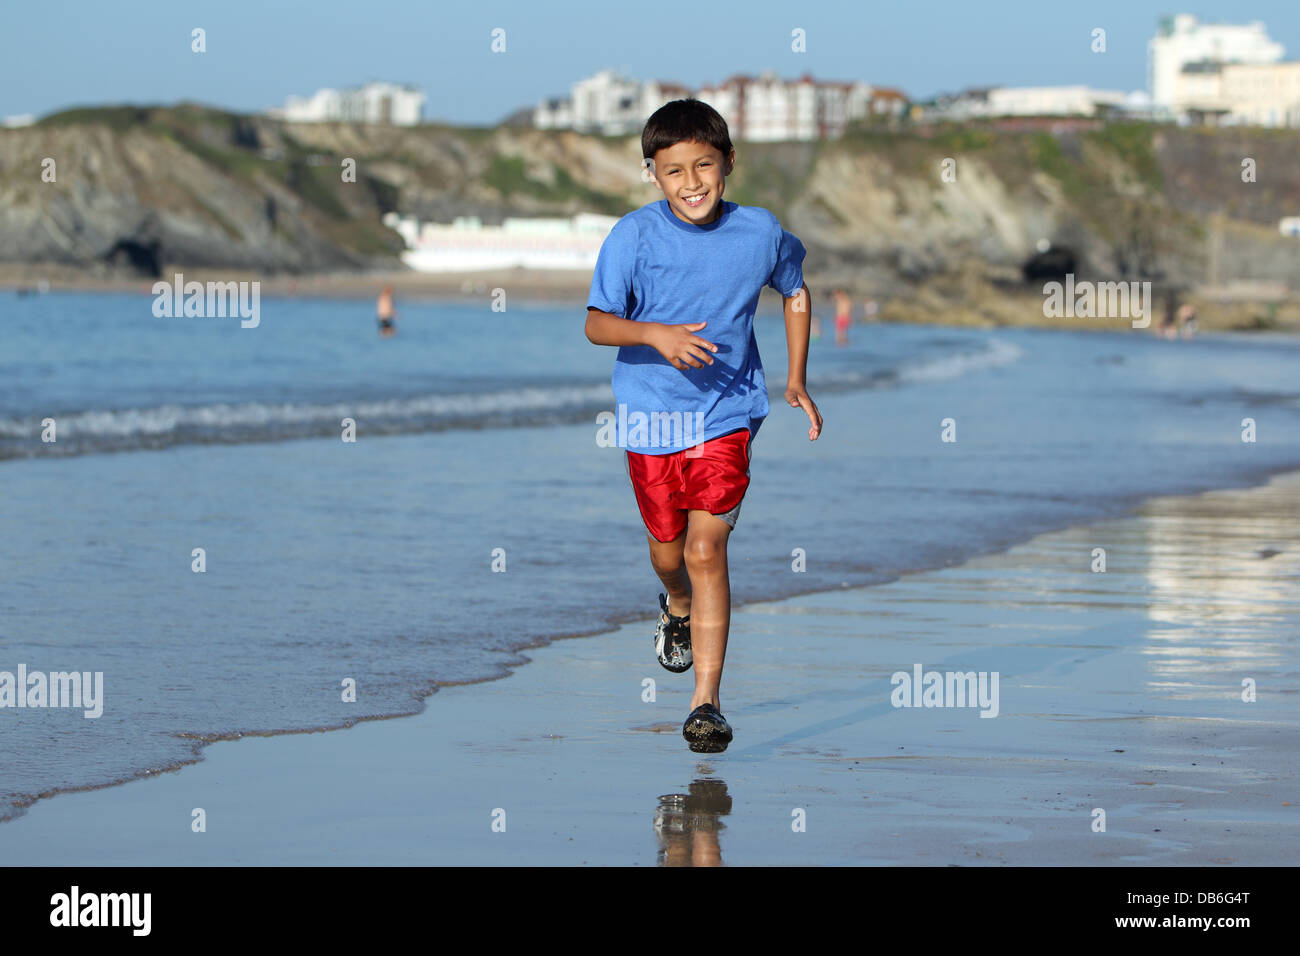 Jeune garçon joue et s'exécute dans le surf le long d'une plage anglaise près de Sunset Banque D'Images